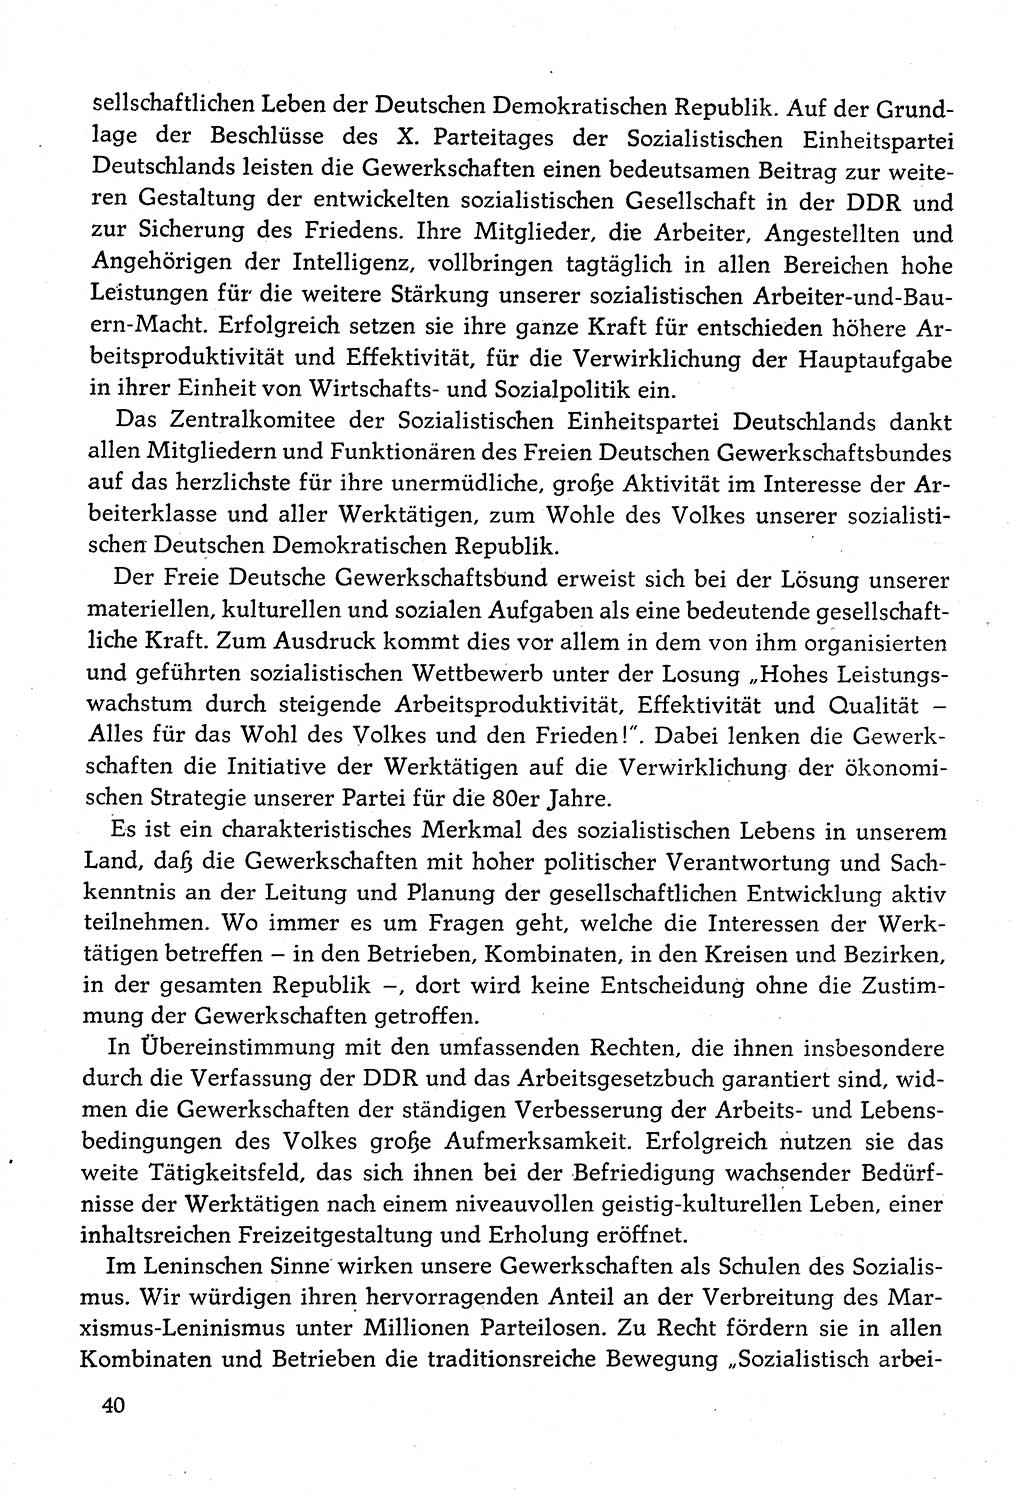 Dokumente der Sozialistischen Einheitspartei Deutschlands (SED) [Deutsche Demokratische Republik (DDR)] 1982-1983, Seite 40 (Dok. SED DDR 1982-1983, S. 40)